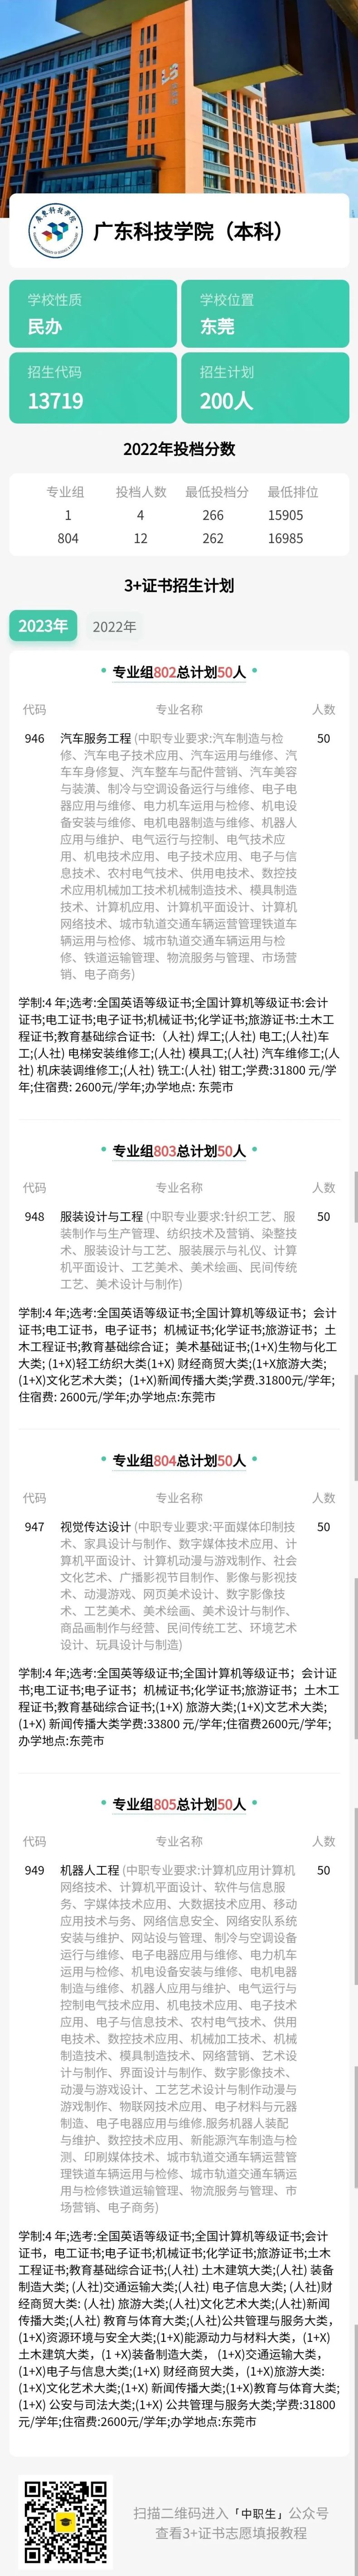 广东省本科院校（中职）招生专业、录取分数、证书要求（9所）-1